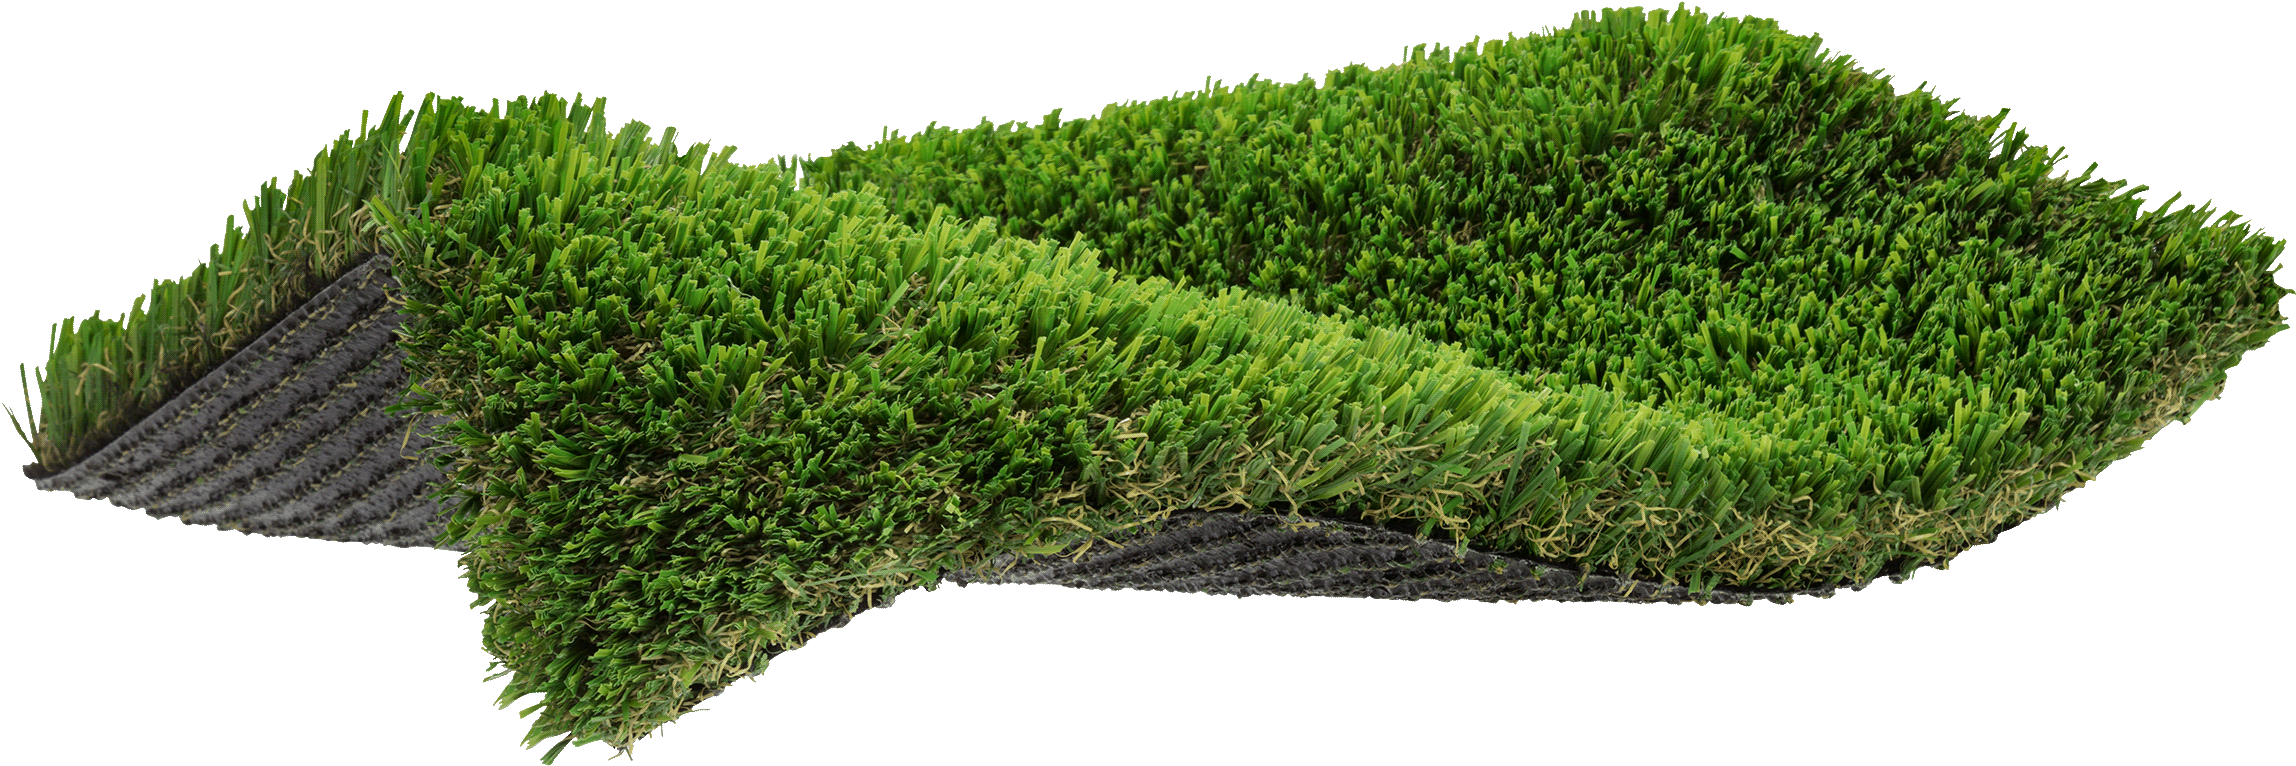 A Close Up Of A Green Grass